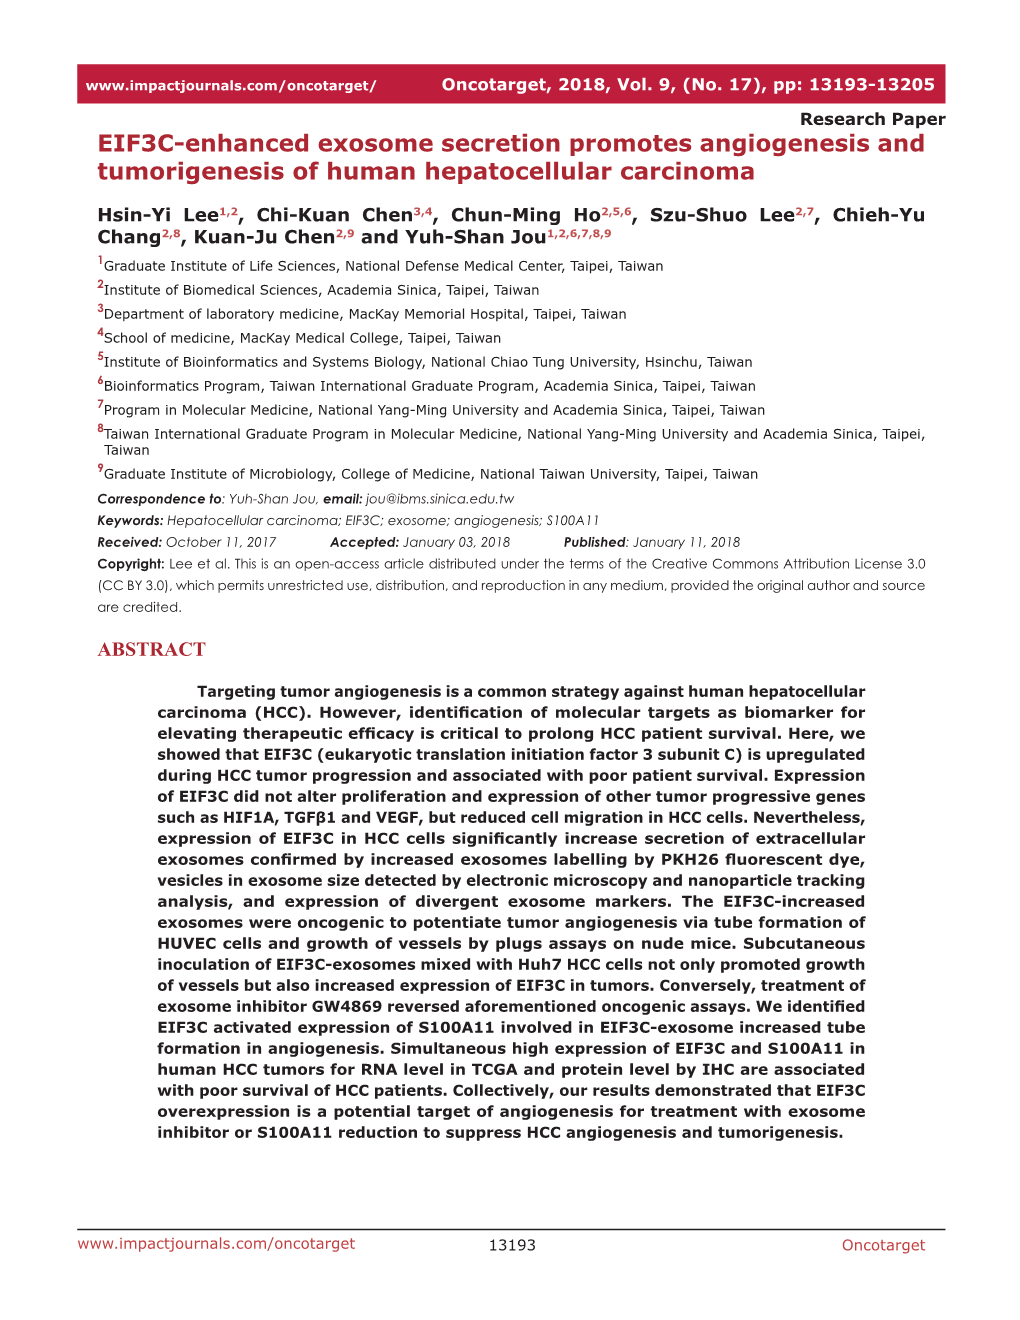 EIF3C-Enhanced Exosome Secretion Promotes Angiogenesis and Tumorigenesis of Human Hepatocellular Carcinoma